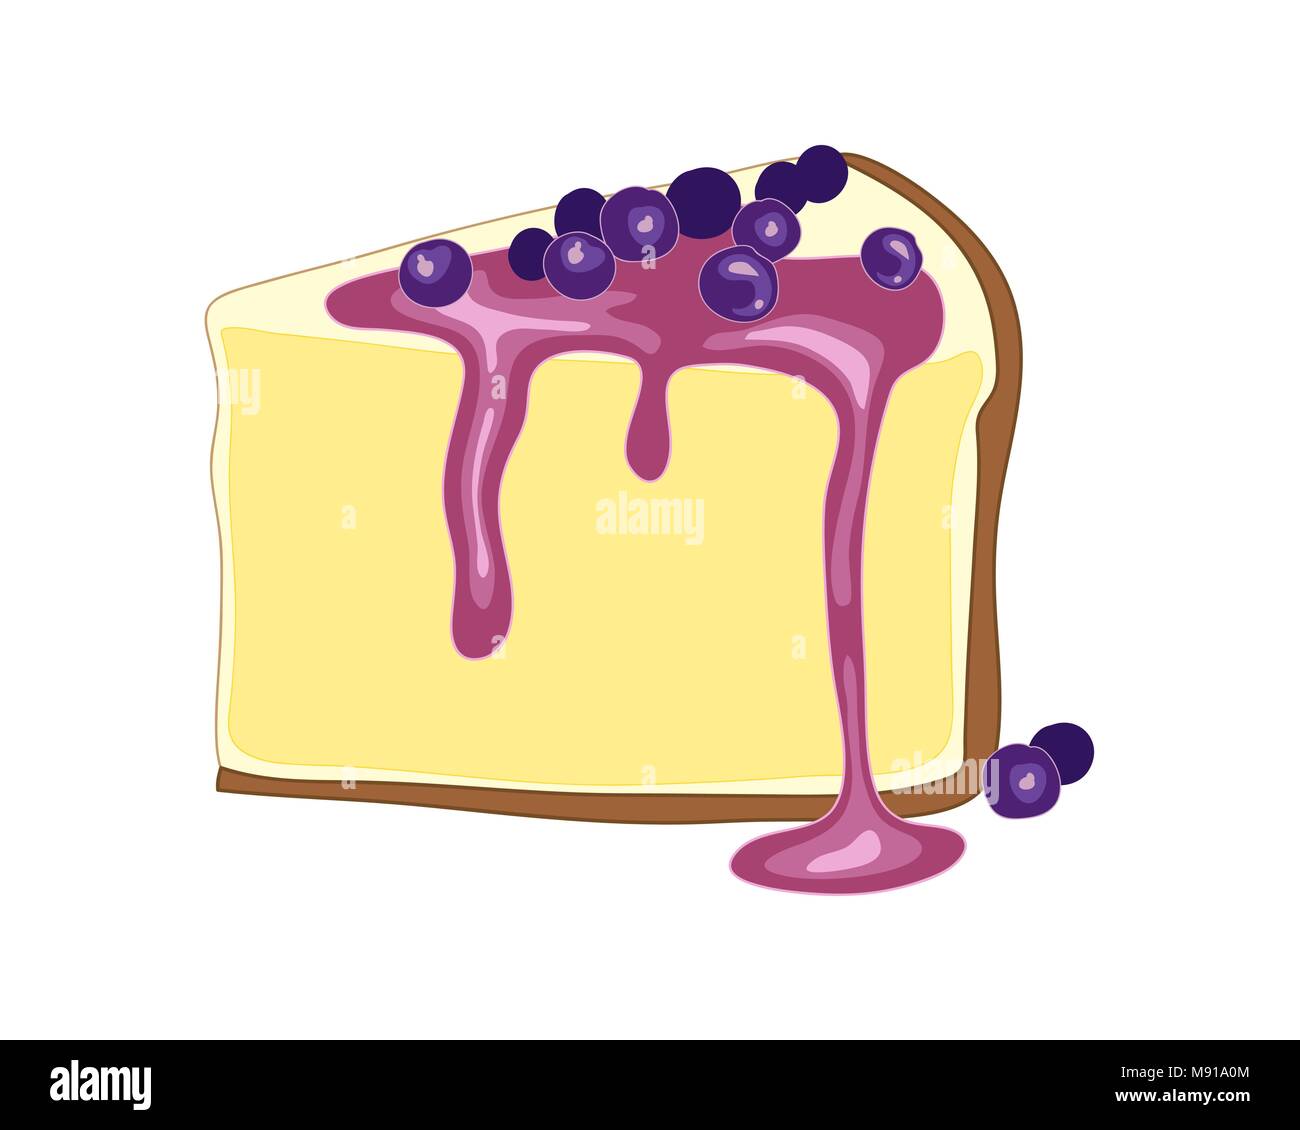 Un vecteur illustration en eps 8 format d'une tranche de gâteau au fromage et aux bleuets avec croûte de biscuits au fromage crémeux et doux de remplissage sur le dessus des bleuets Illustration de Vecteur